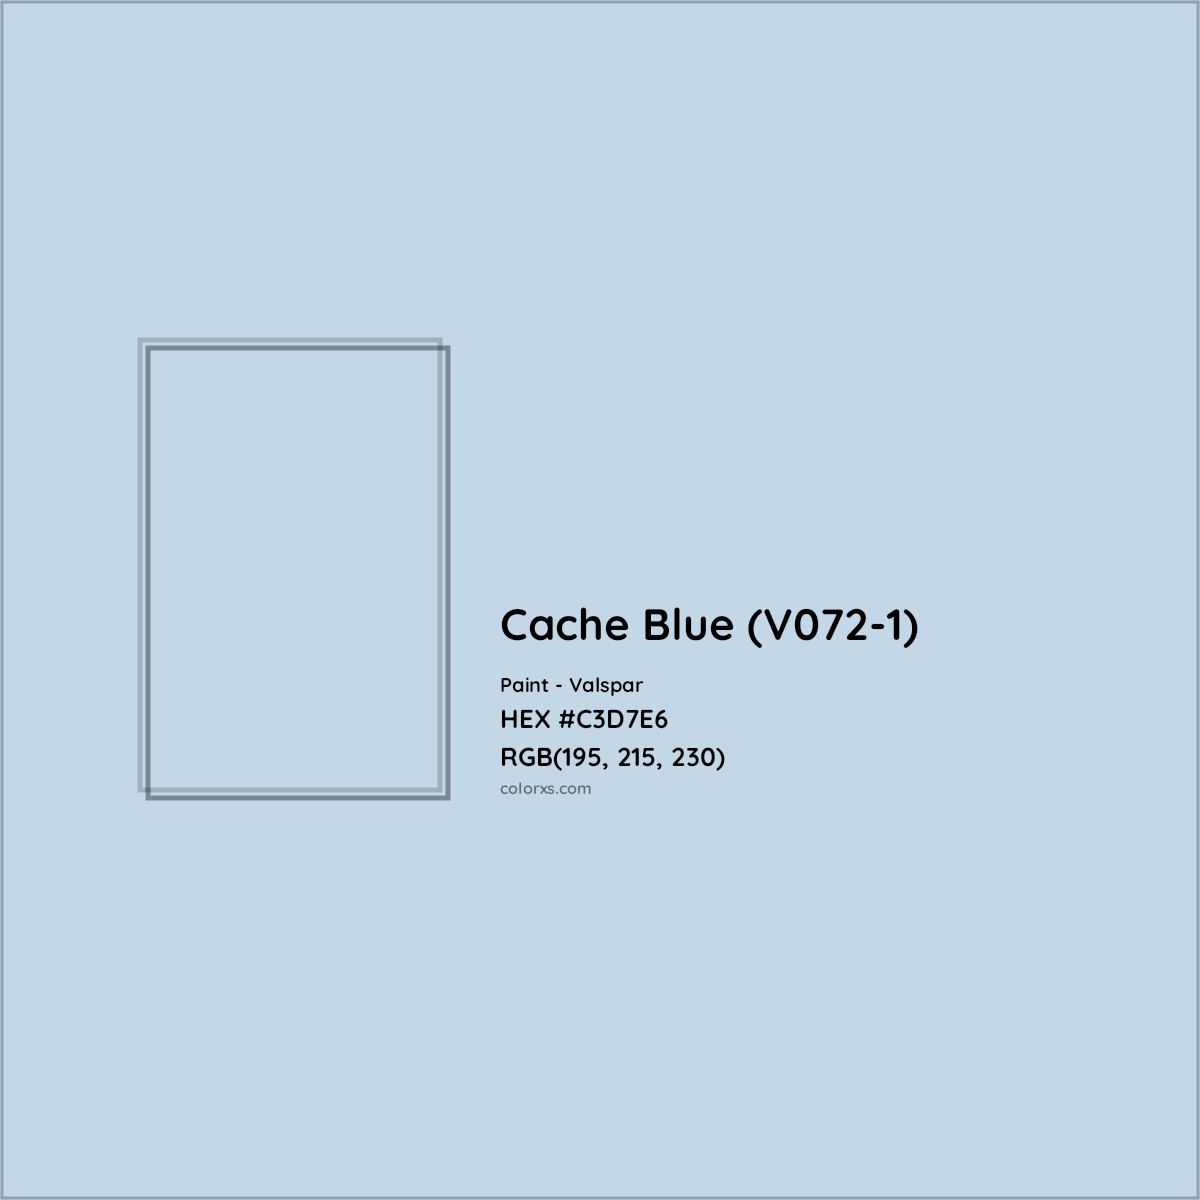 HEX #C3D7E6 Cache Blue (V072-1) Paint Valspar - Color Code